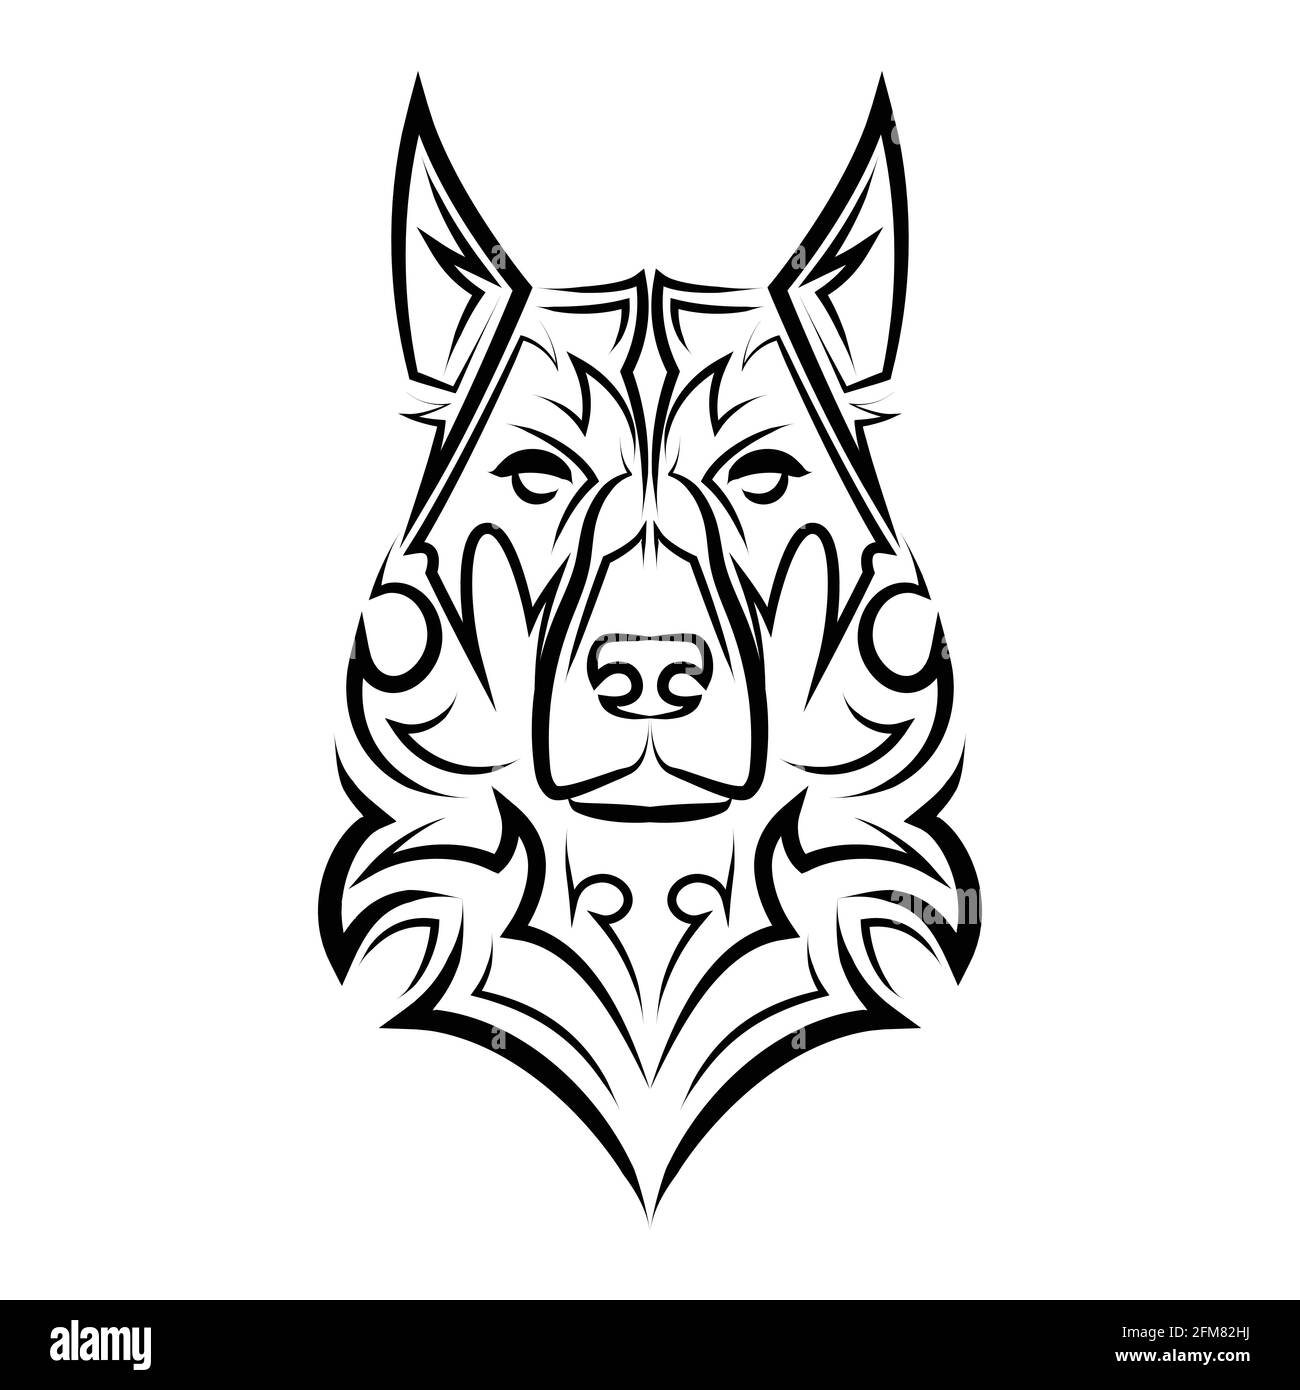 Línea de arte en blanco y negro de la cabeza de perro pastor alemán. Buen  uso para símbolo, mascota, icono, avatar, tatuaje, Diseño de camiseta,  logotipo o cualquier diseño que quieras Imagen